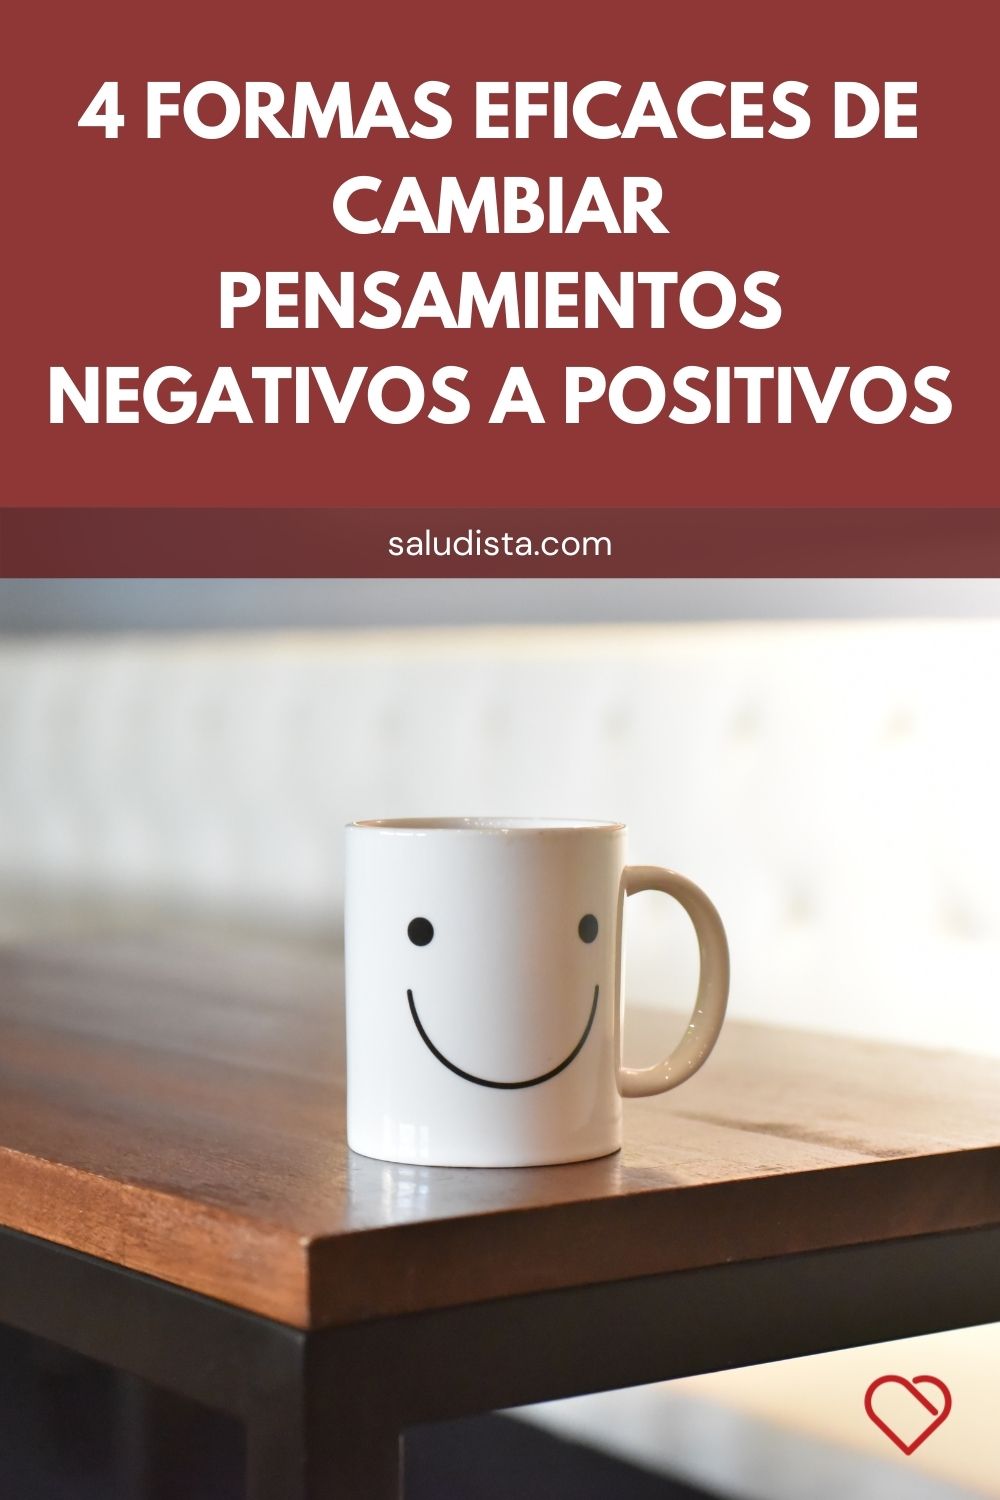 4 formas eficaces de cambiar pensamientos negativos a positivos